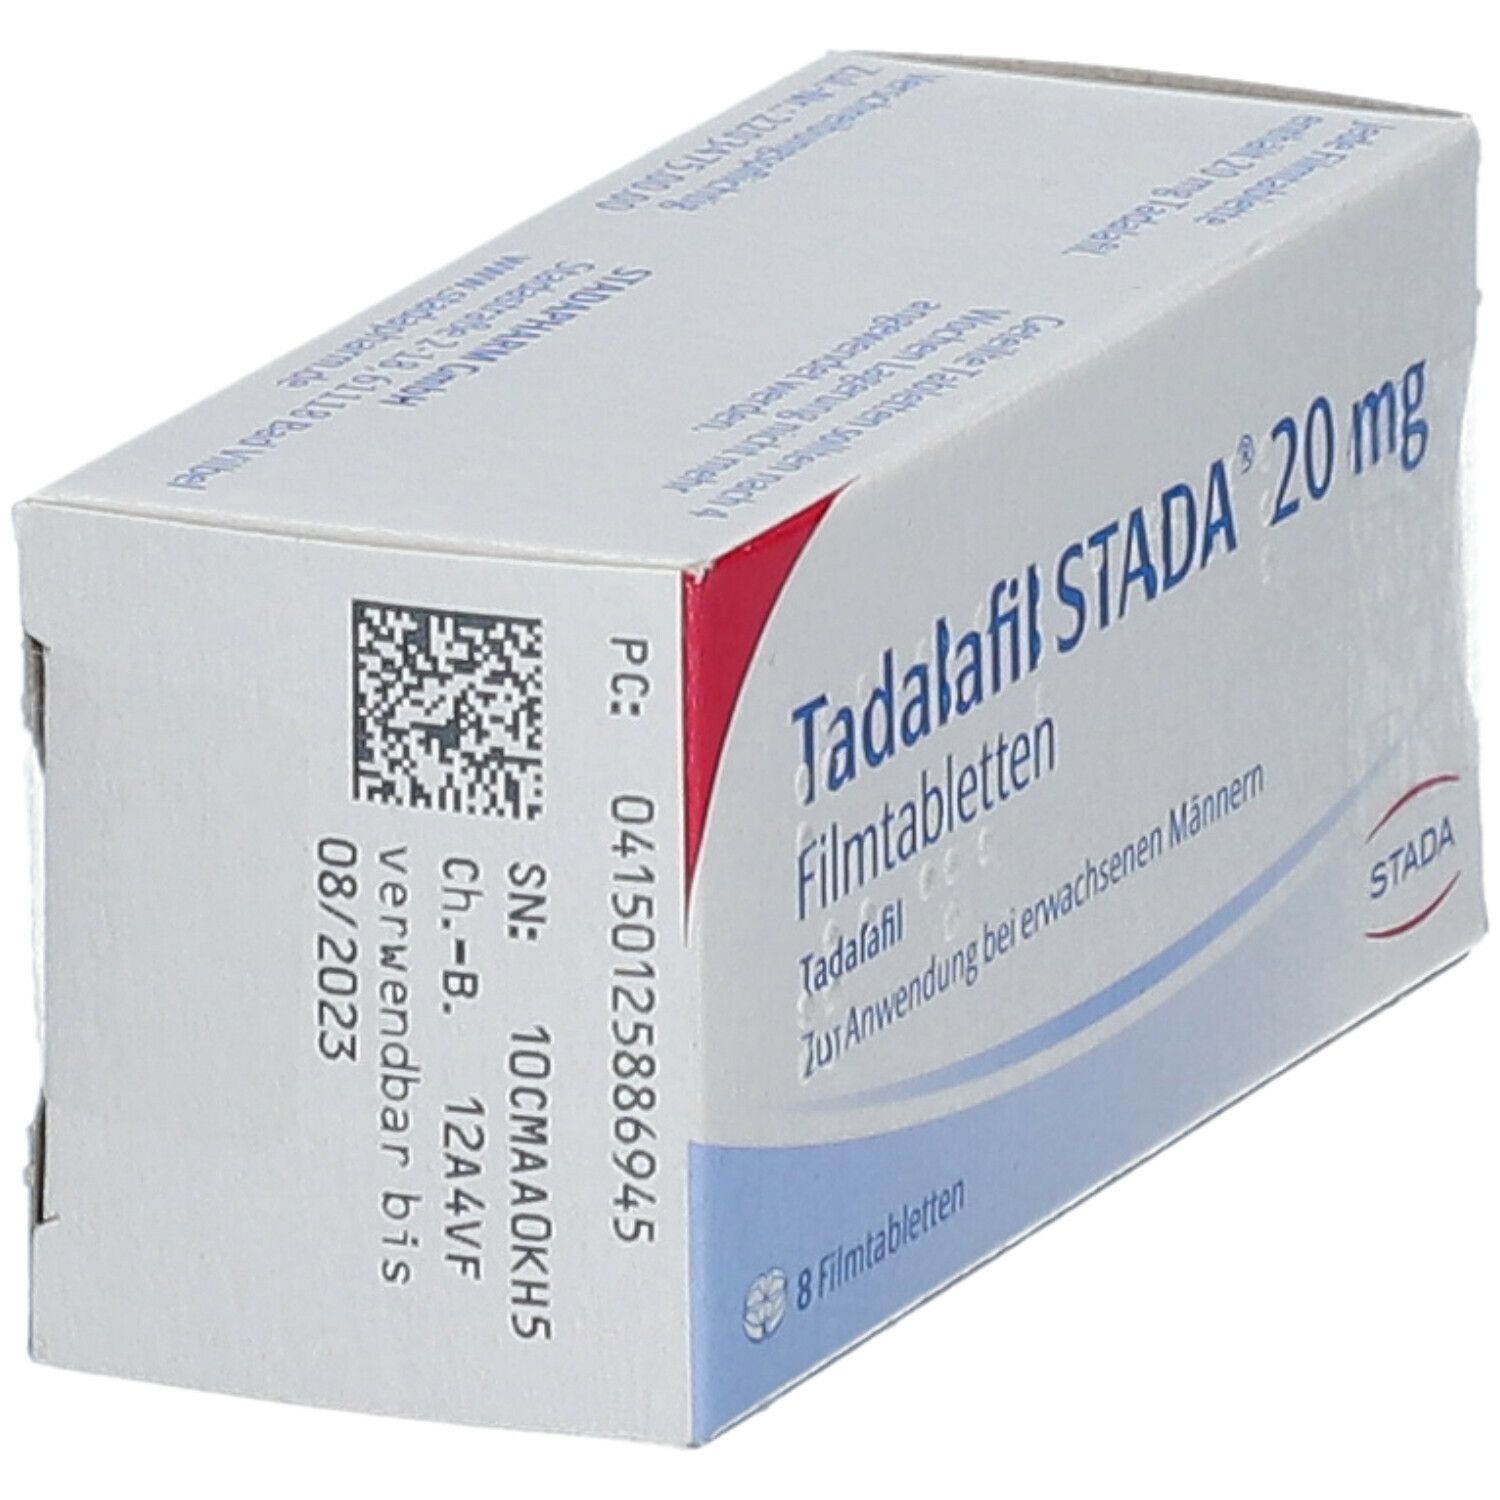 Tadalafil STADA® 20 mg